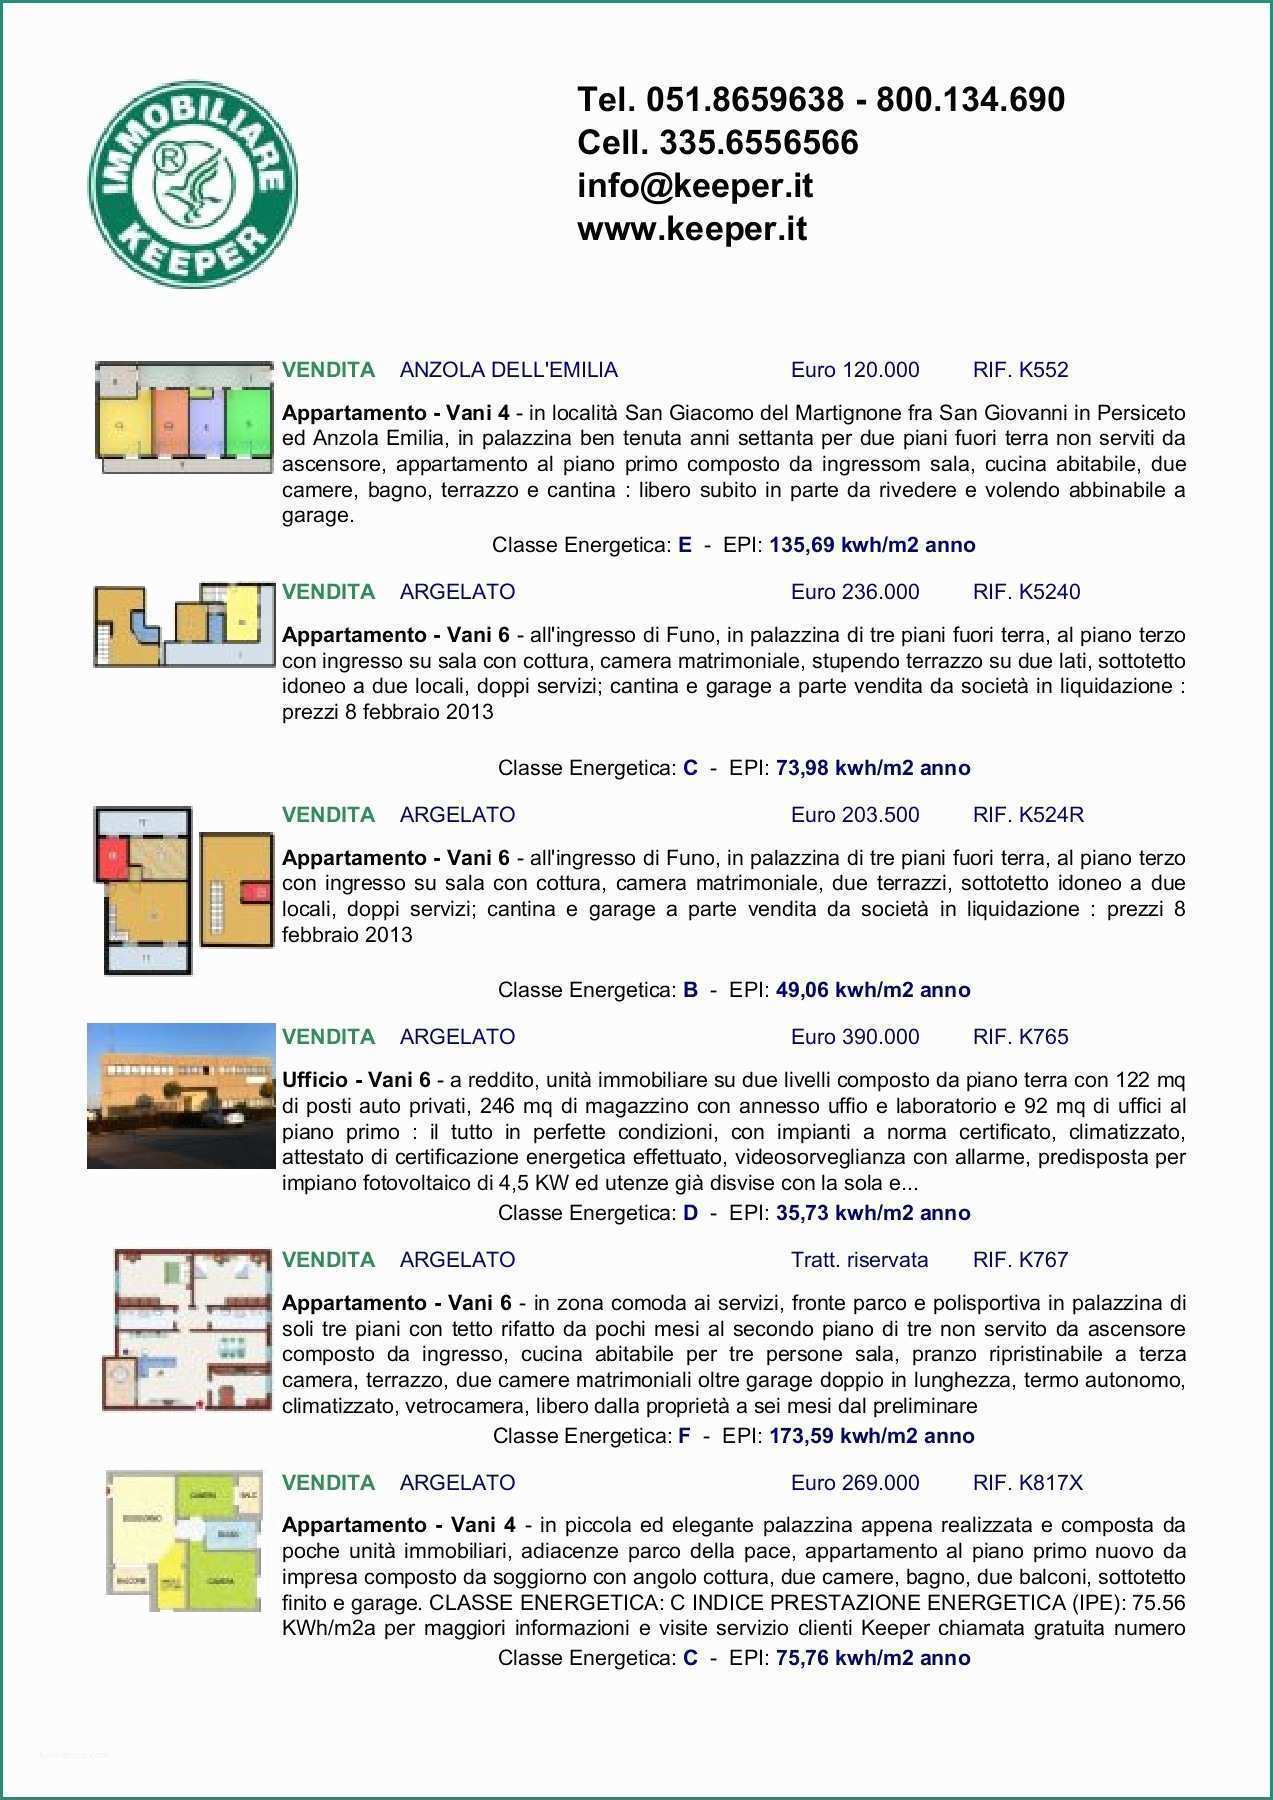 Vendo Pannelli Coibentati Usati E Catalogo 2015 2 Pages 1 17 Text Version